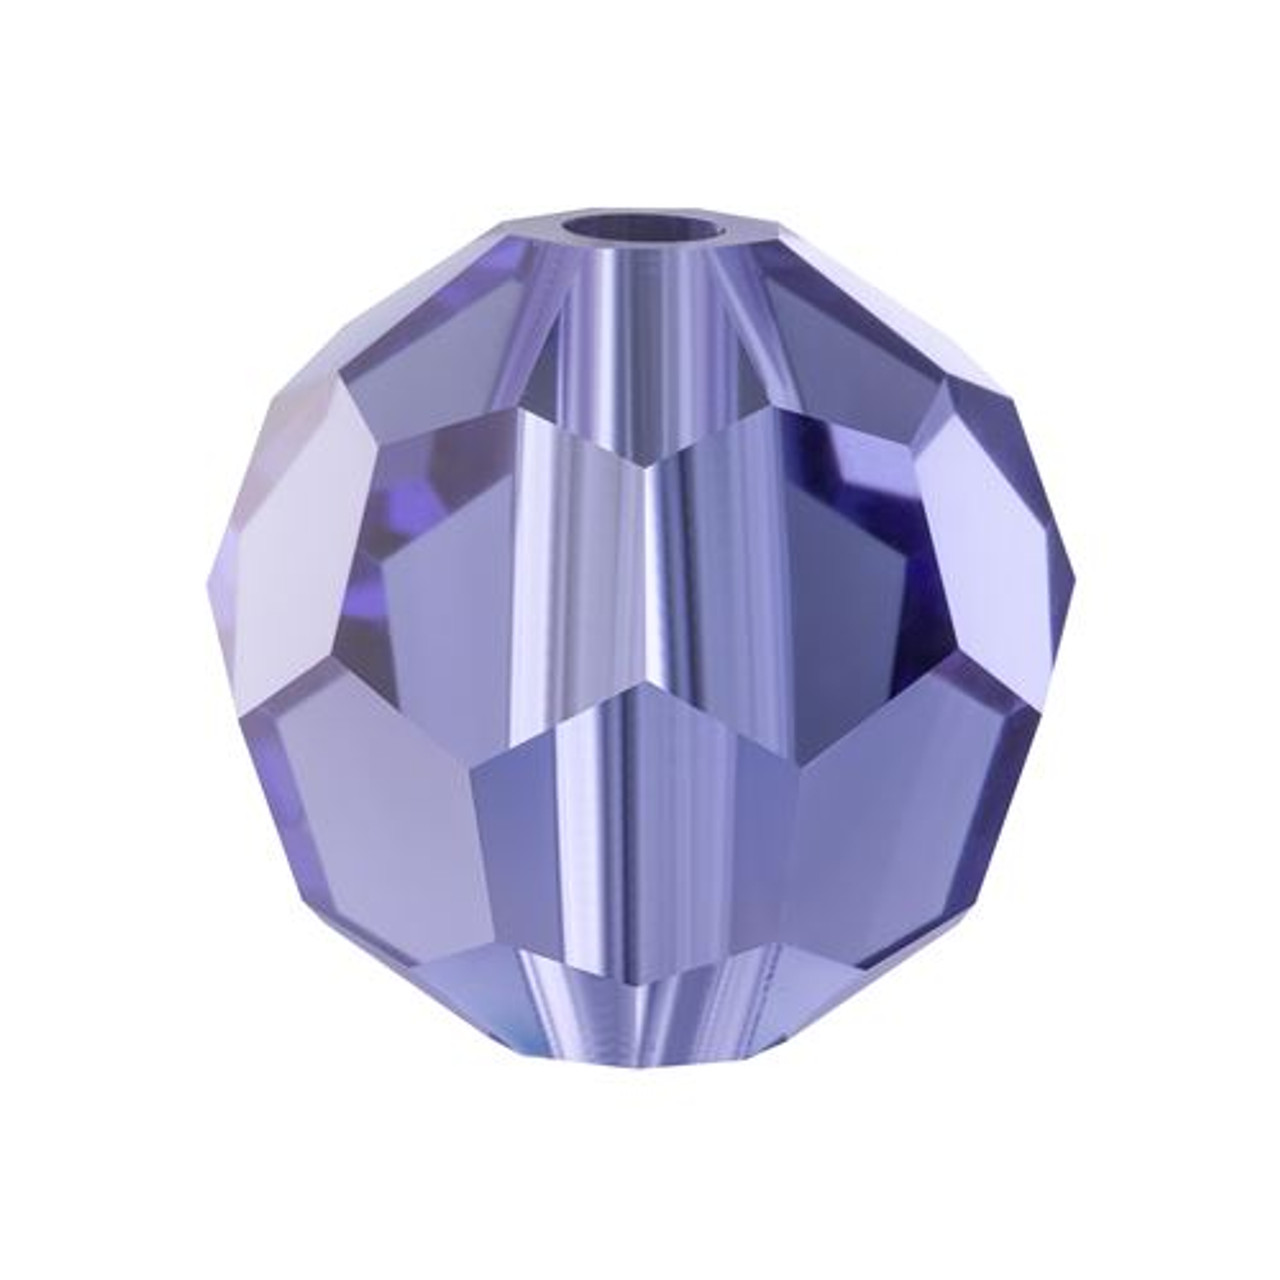 Preciosa Crystals, Product categories